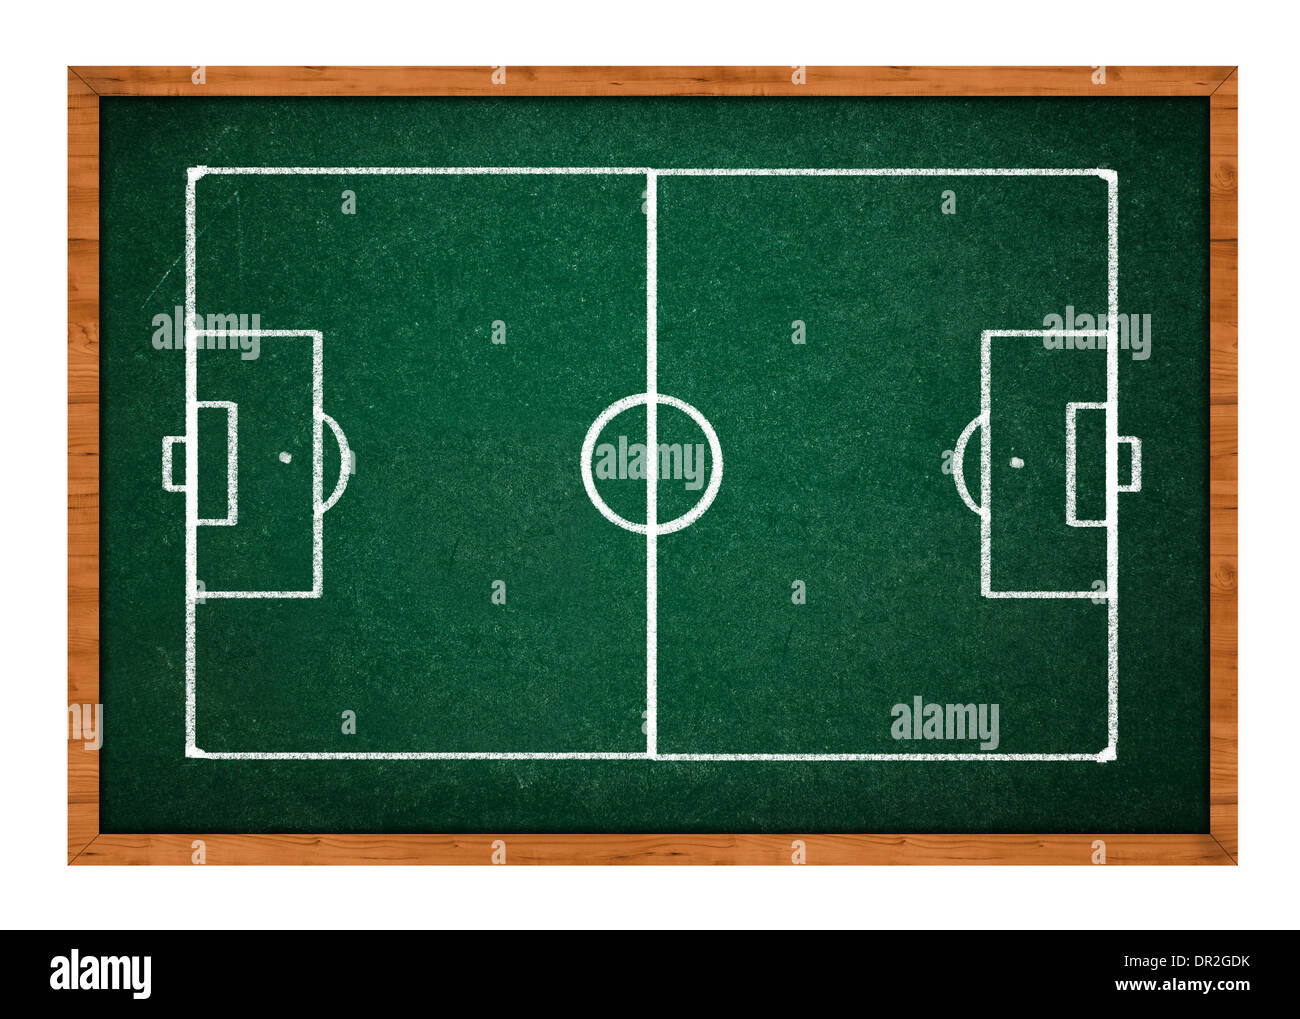 Dibujado a mano el campo de fútbol (soccer) en una pizarra verde, fondo  para el aprendizaje de fútbol o soccer tácticas Fotografía de stock - Alamy